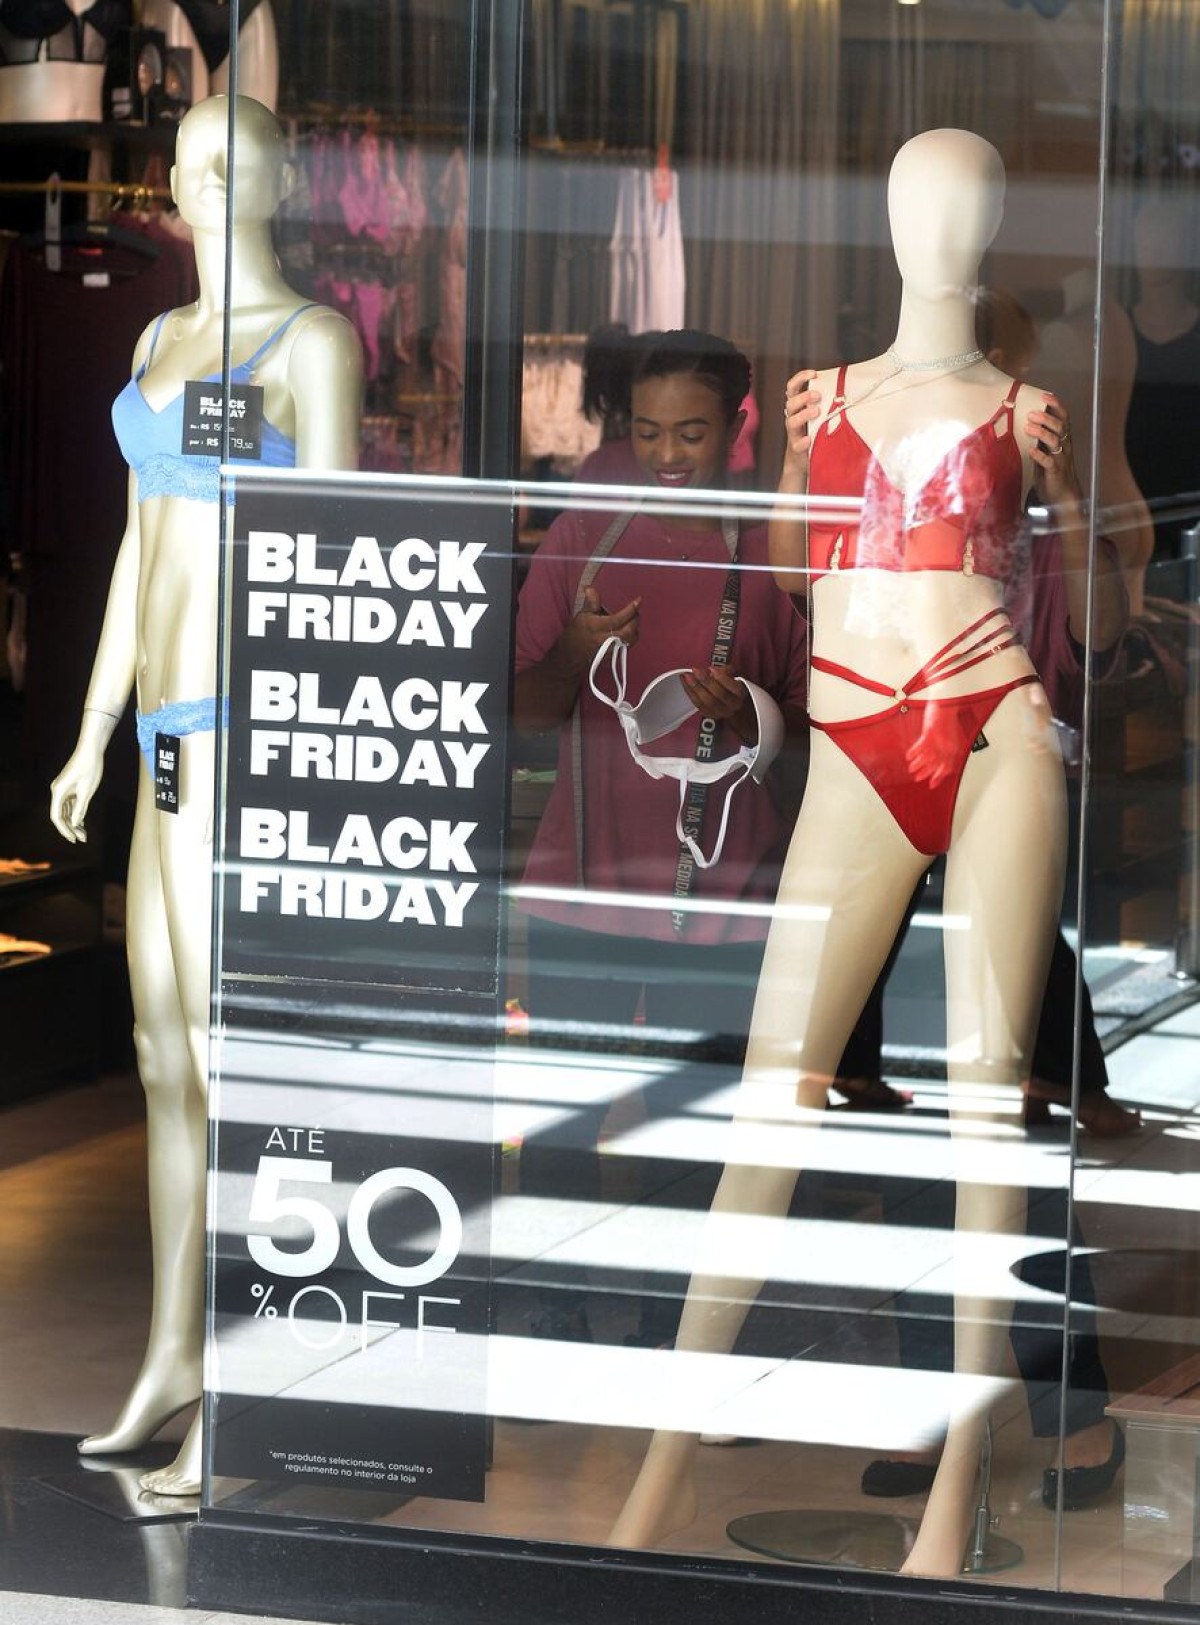 Varejistas estão otimistas com vendas na Black Friday